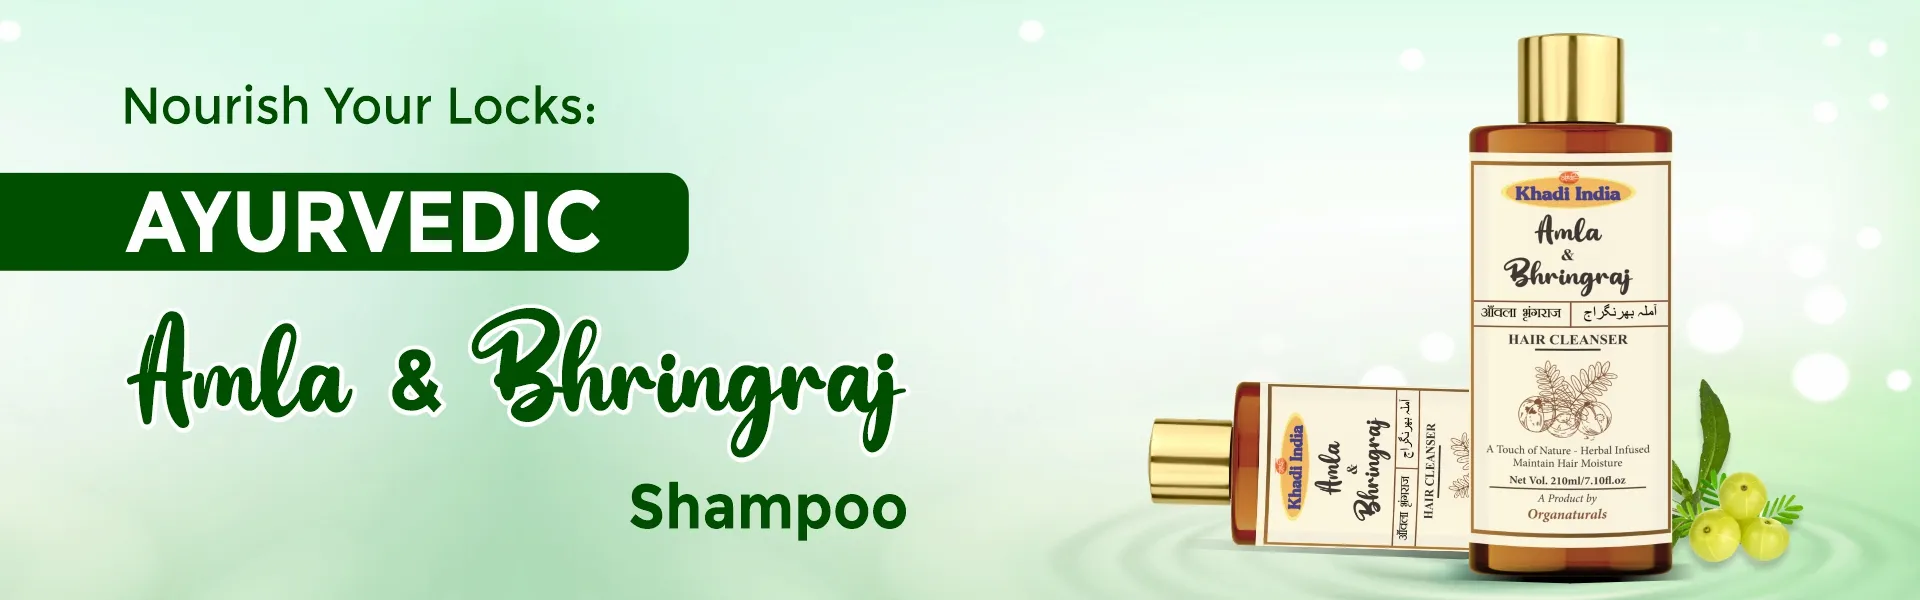 Amla & Bhringraj Shampoo - www.dkihenna.com